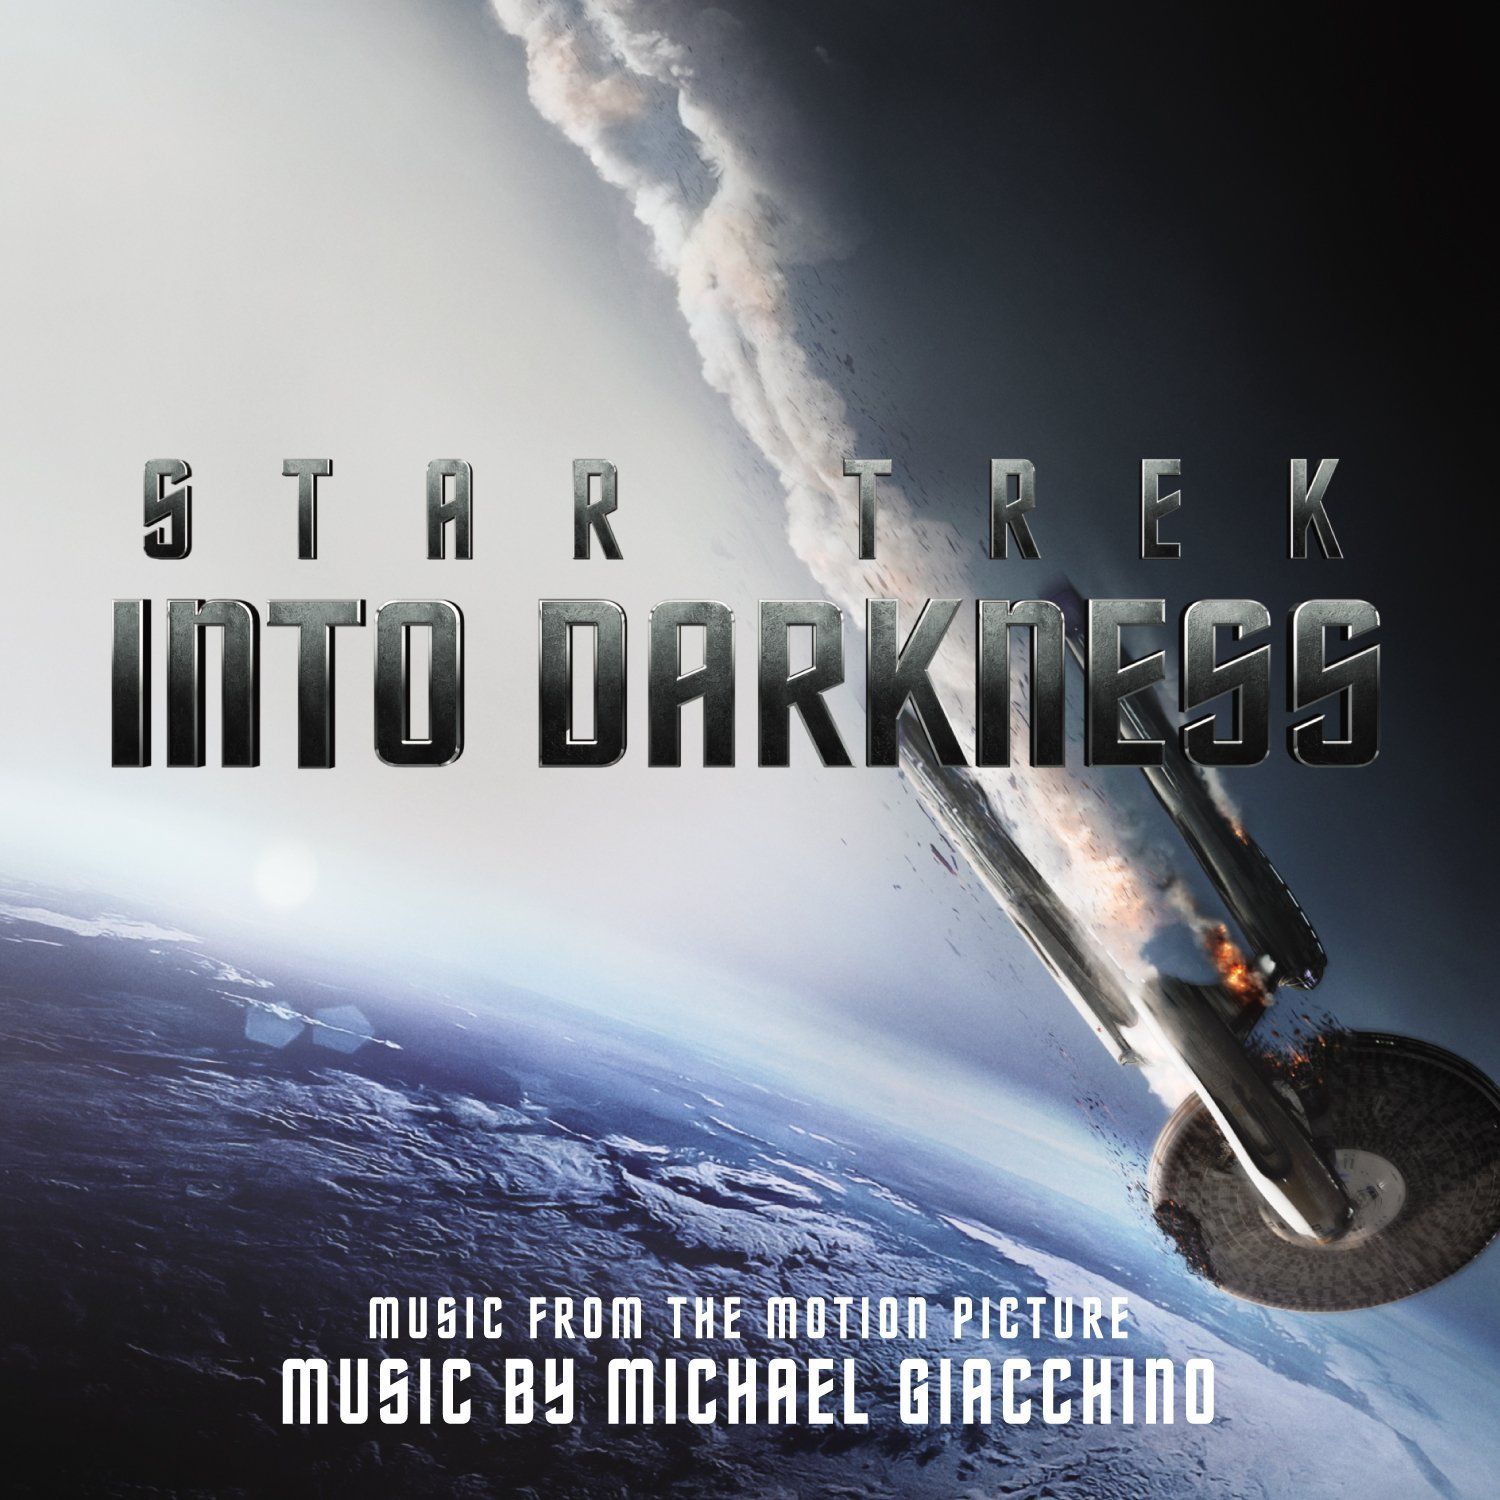 star trek 2009 music soundtrack